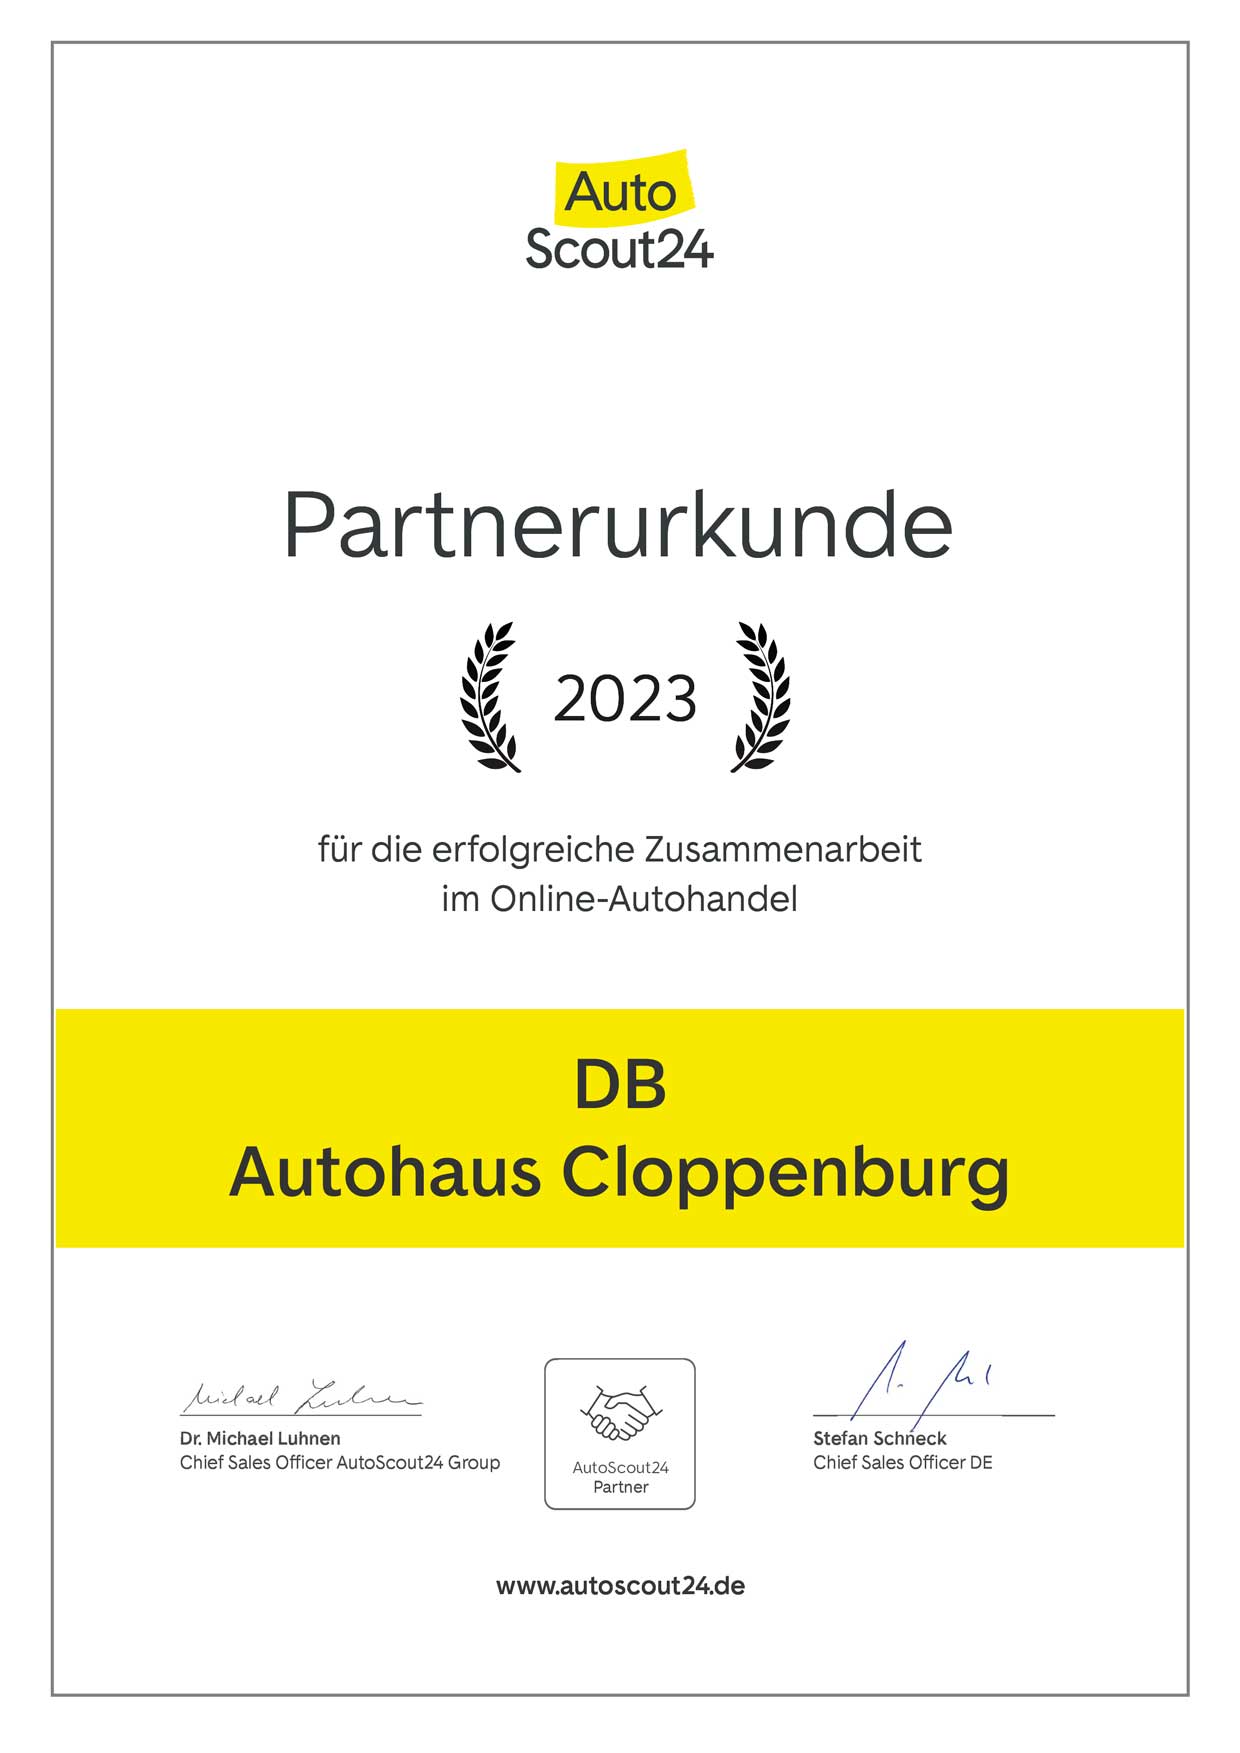 Partnerurkunde von Autoscout24 für DB Autohaus Cloppenburg